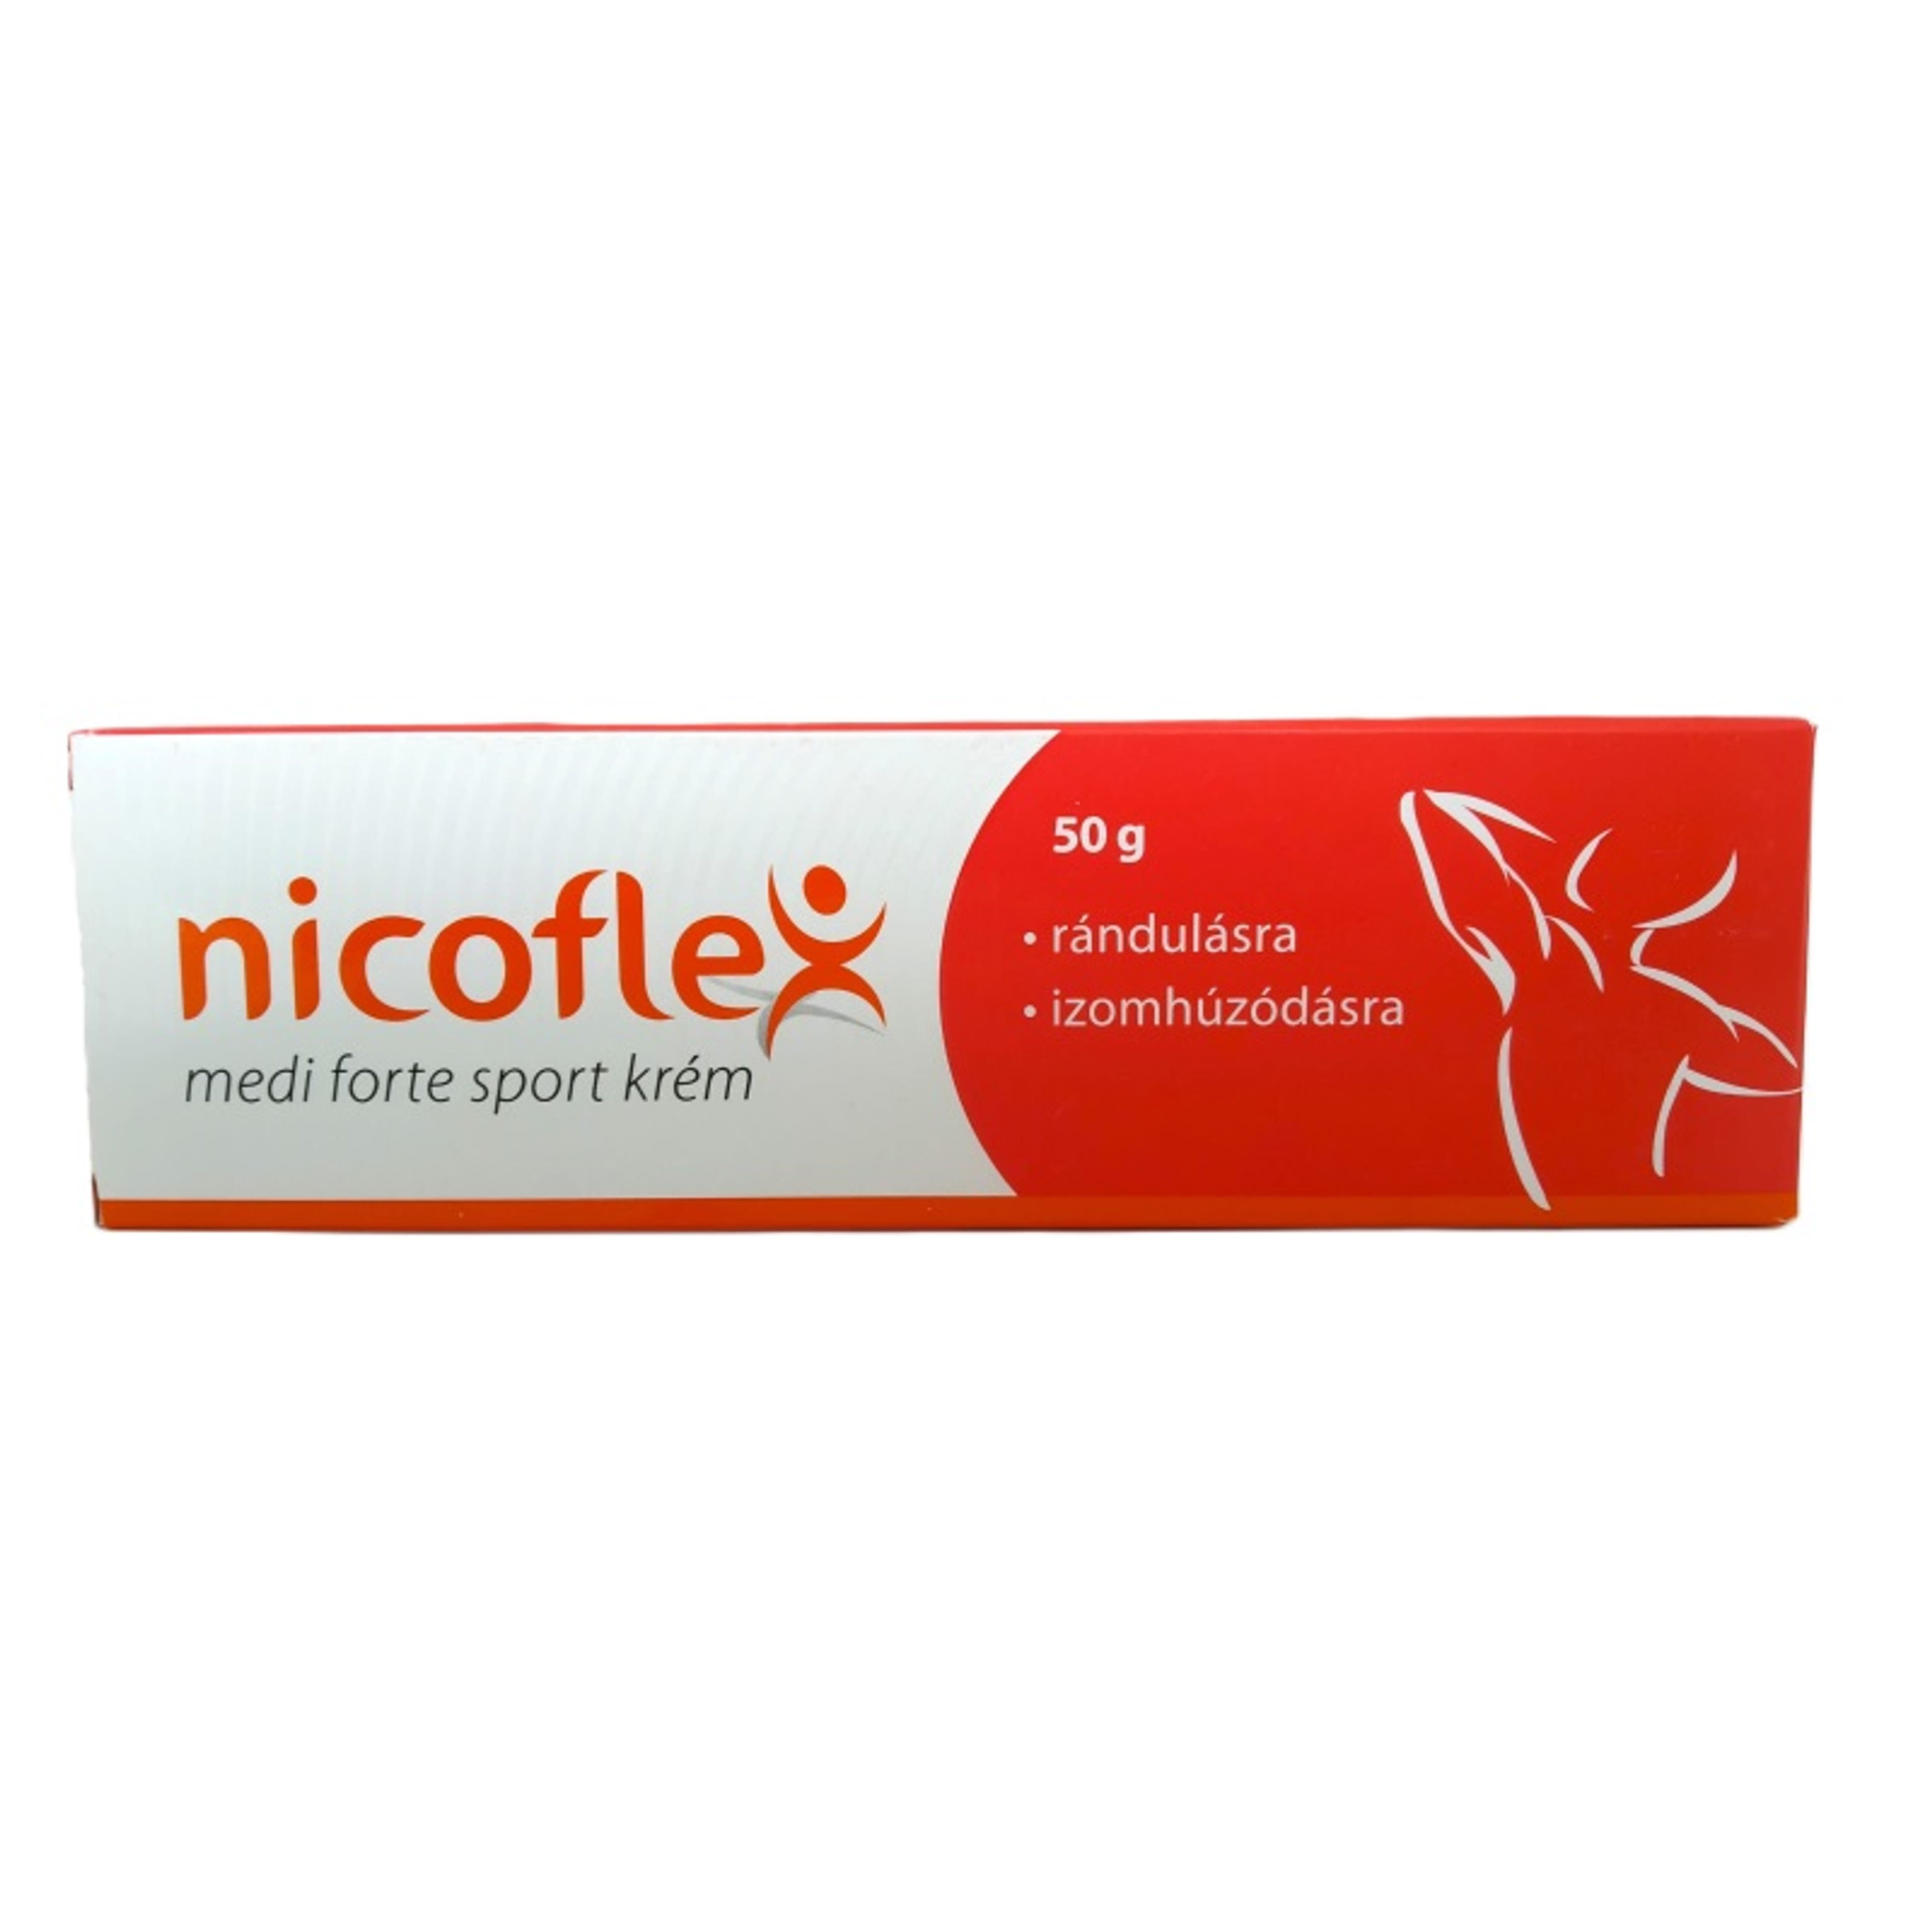 Nicoflex medi forte sportkrém - 50 g